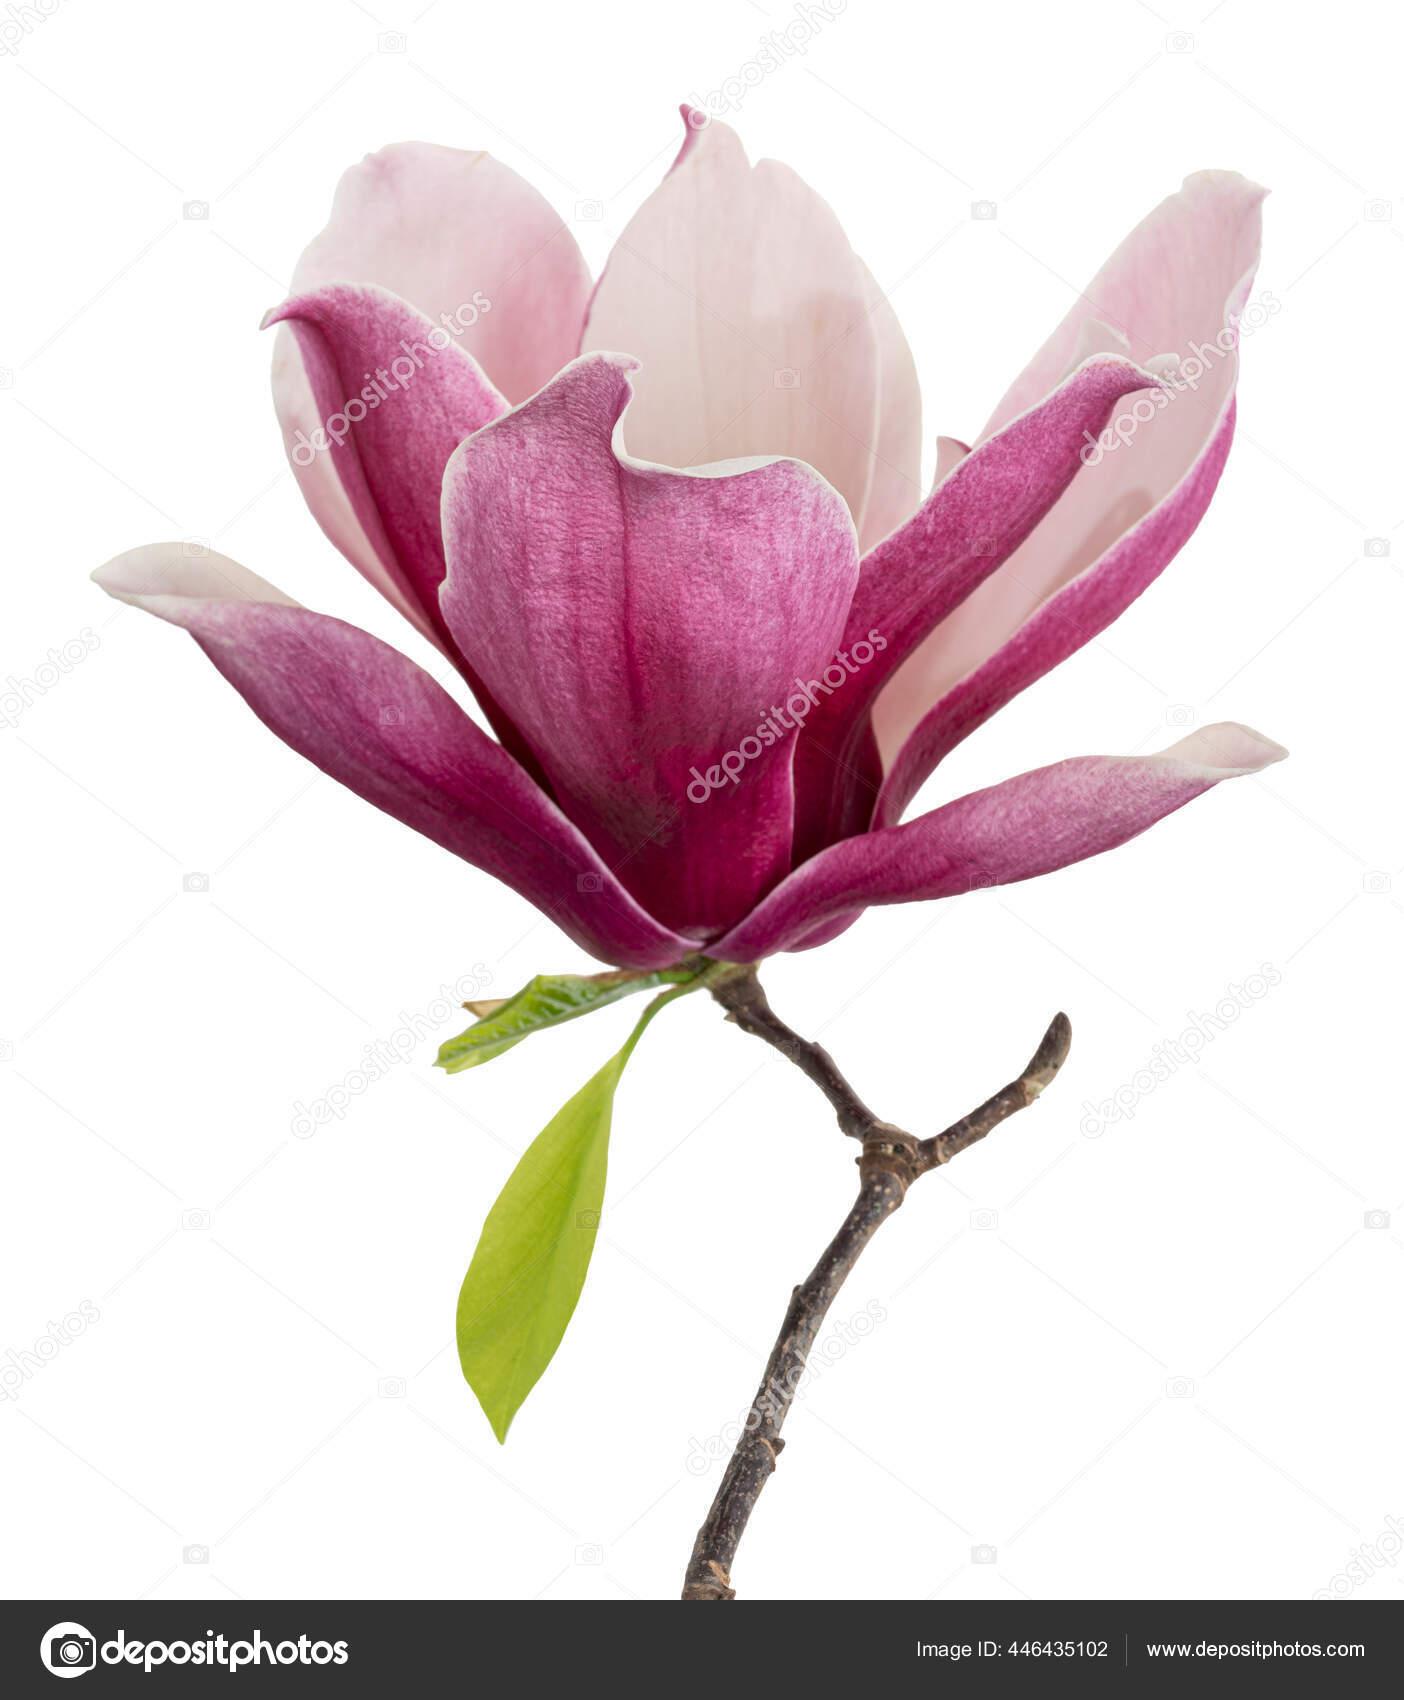 pink magnolia flower branch